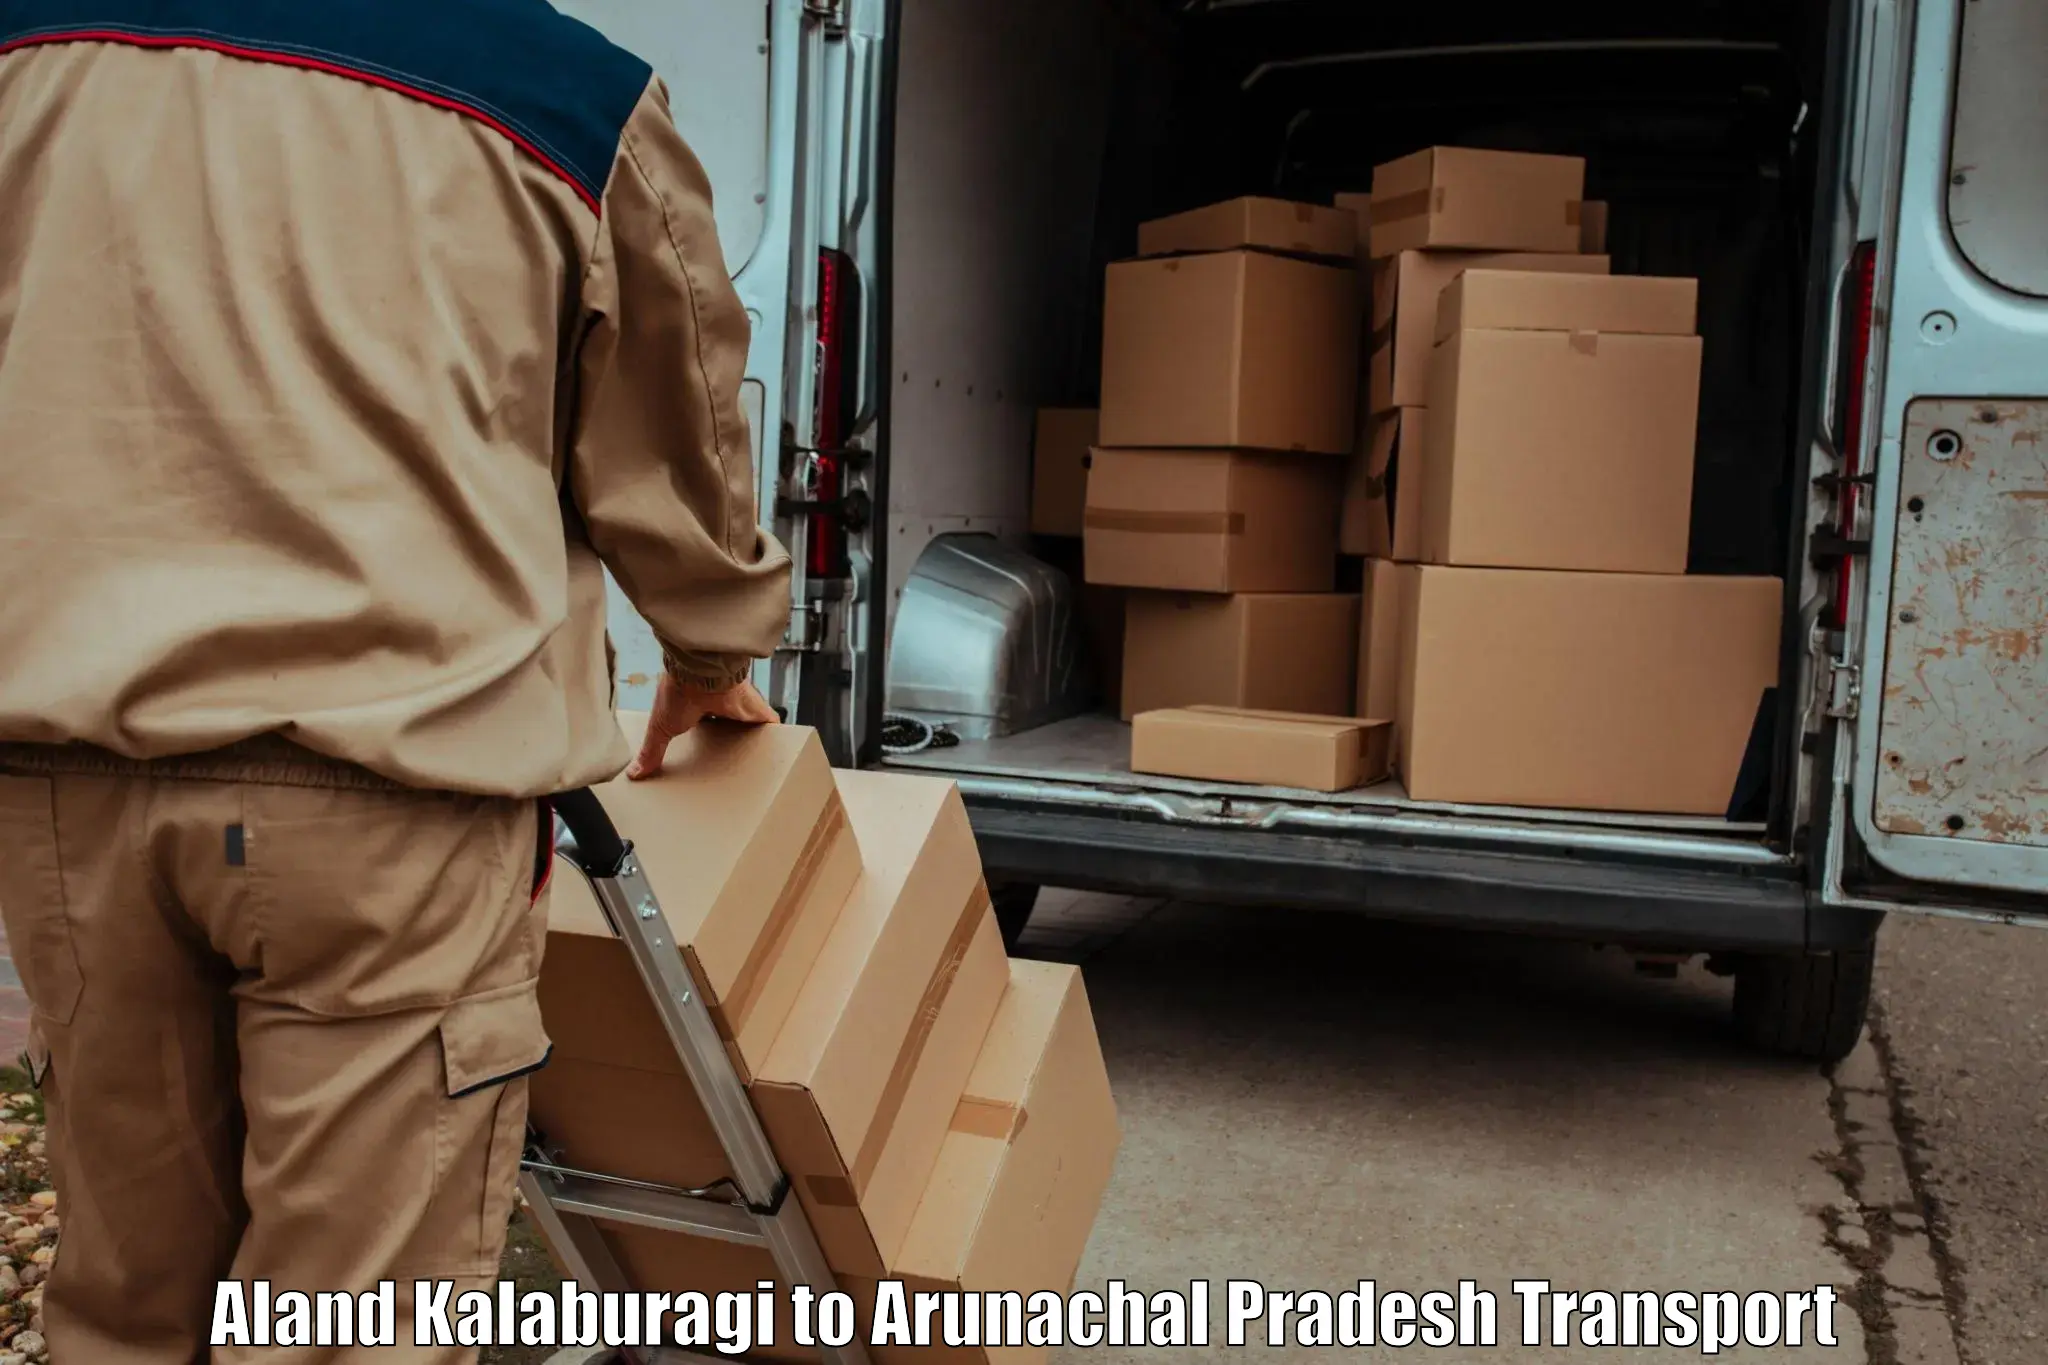 Parcel transport services Aland Kalaburagi to Basar